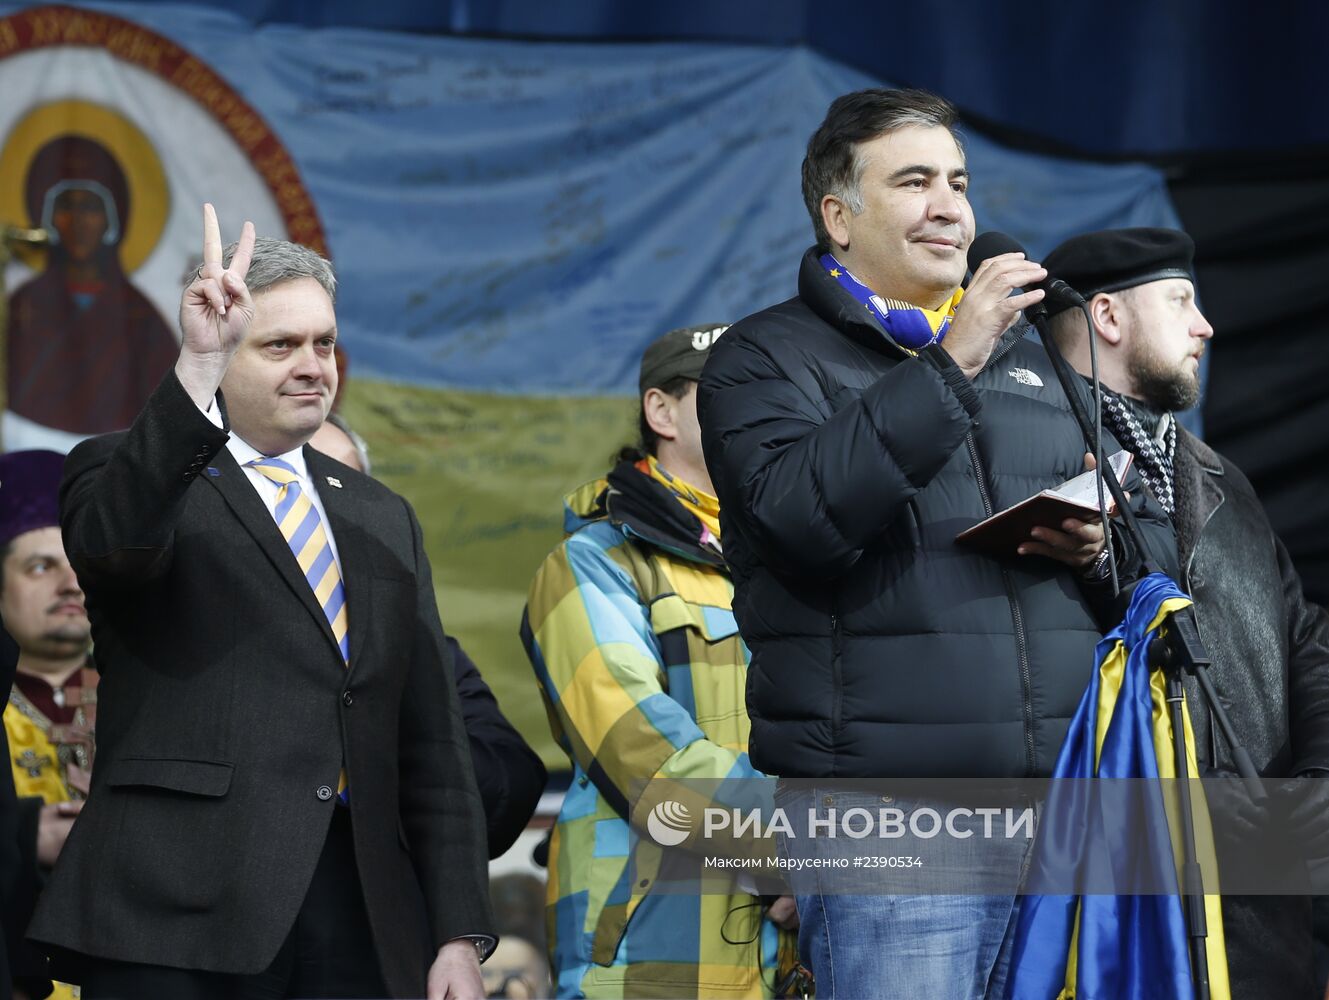 Всеукраинское Вече народа Украины на Майдане